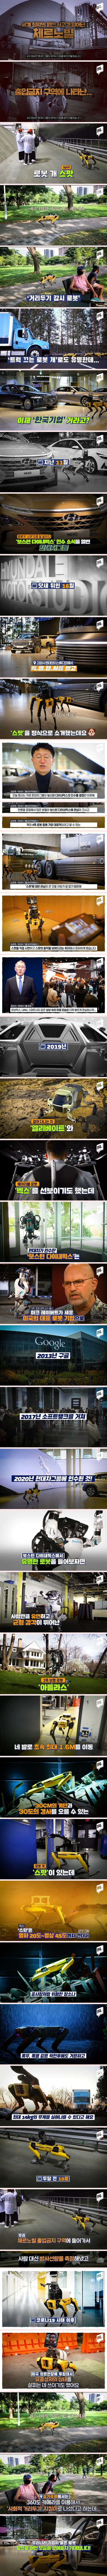 ',세계 최고 로봇 회사', 인수한 한국기업 근황.jpg